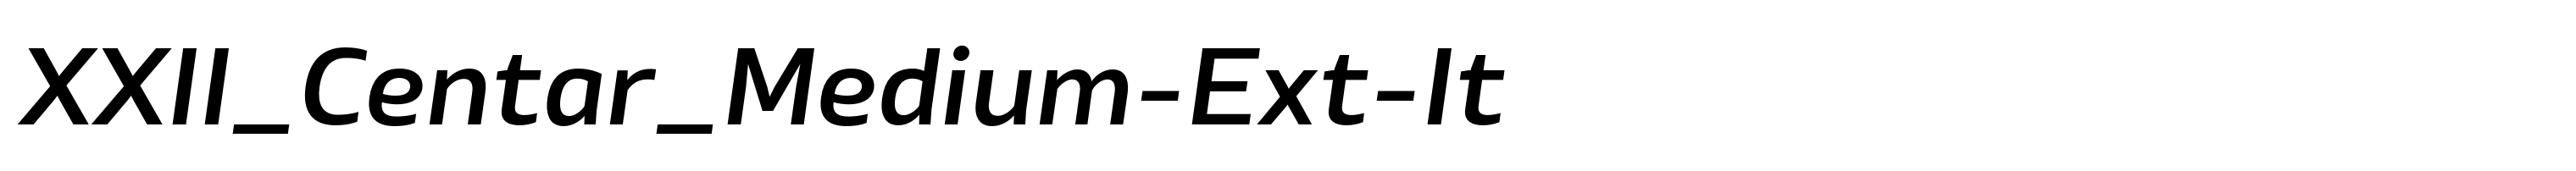 XXII_Centar_Medium-Ext-It